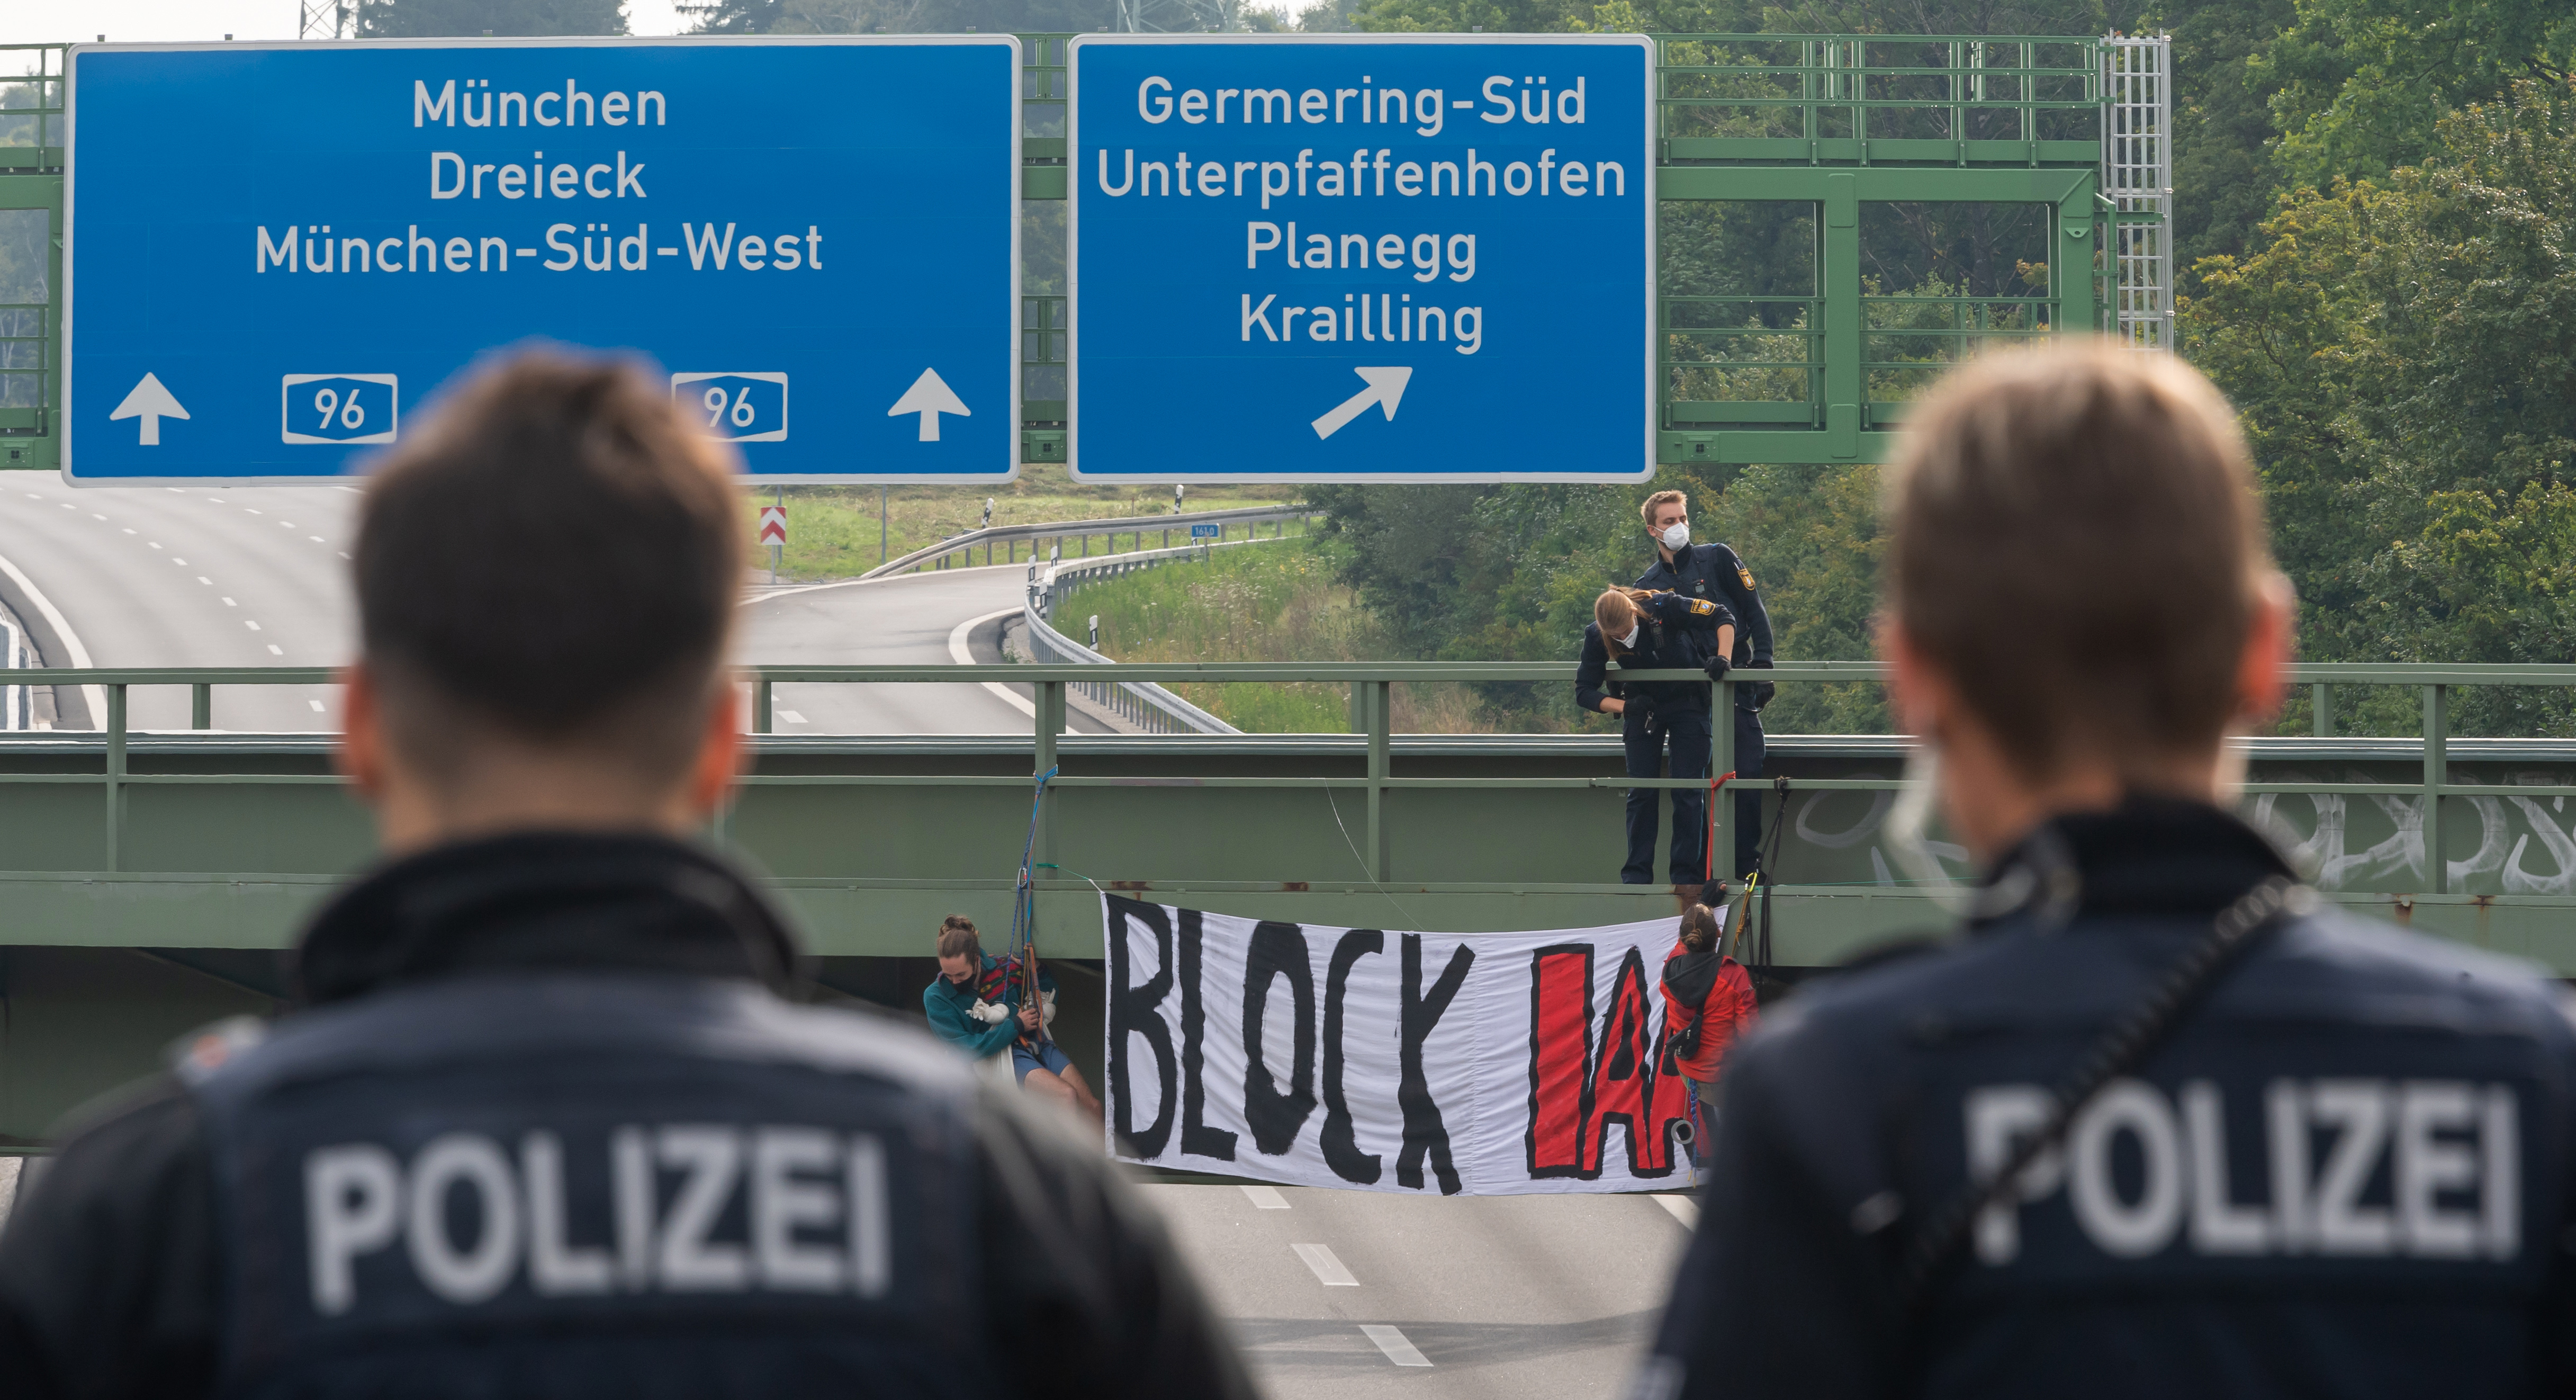 München: Polizei setzt Schlagstock am Gärtnerplatz wegen Ruhestörung ein